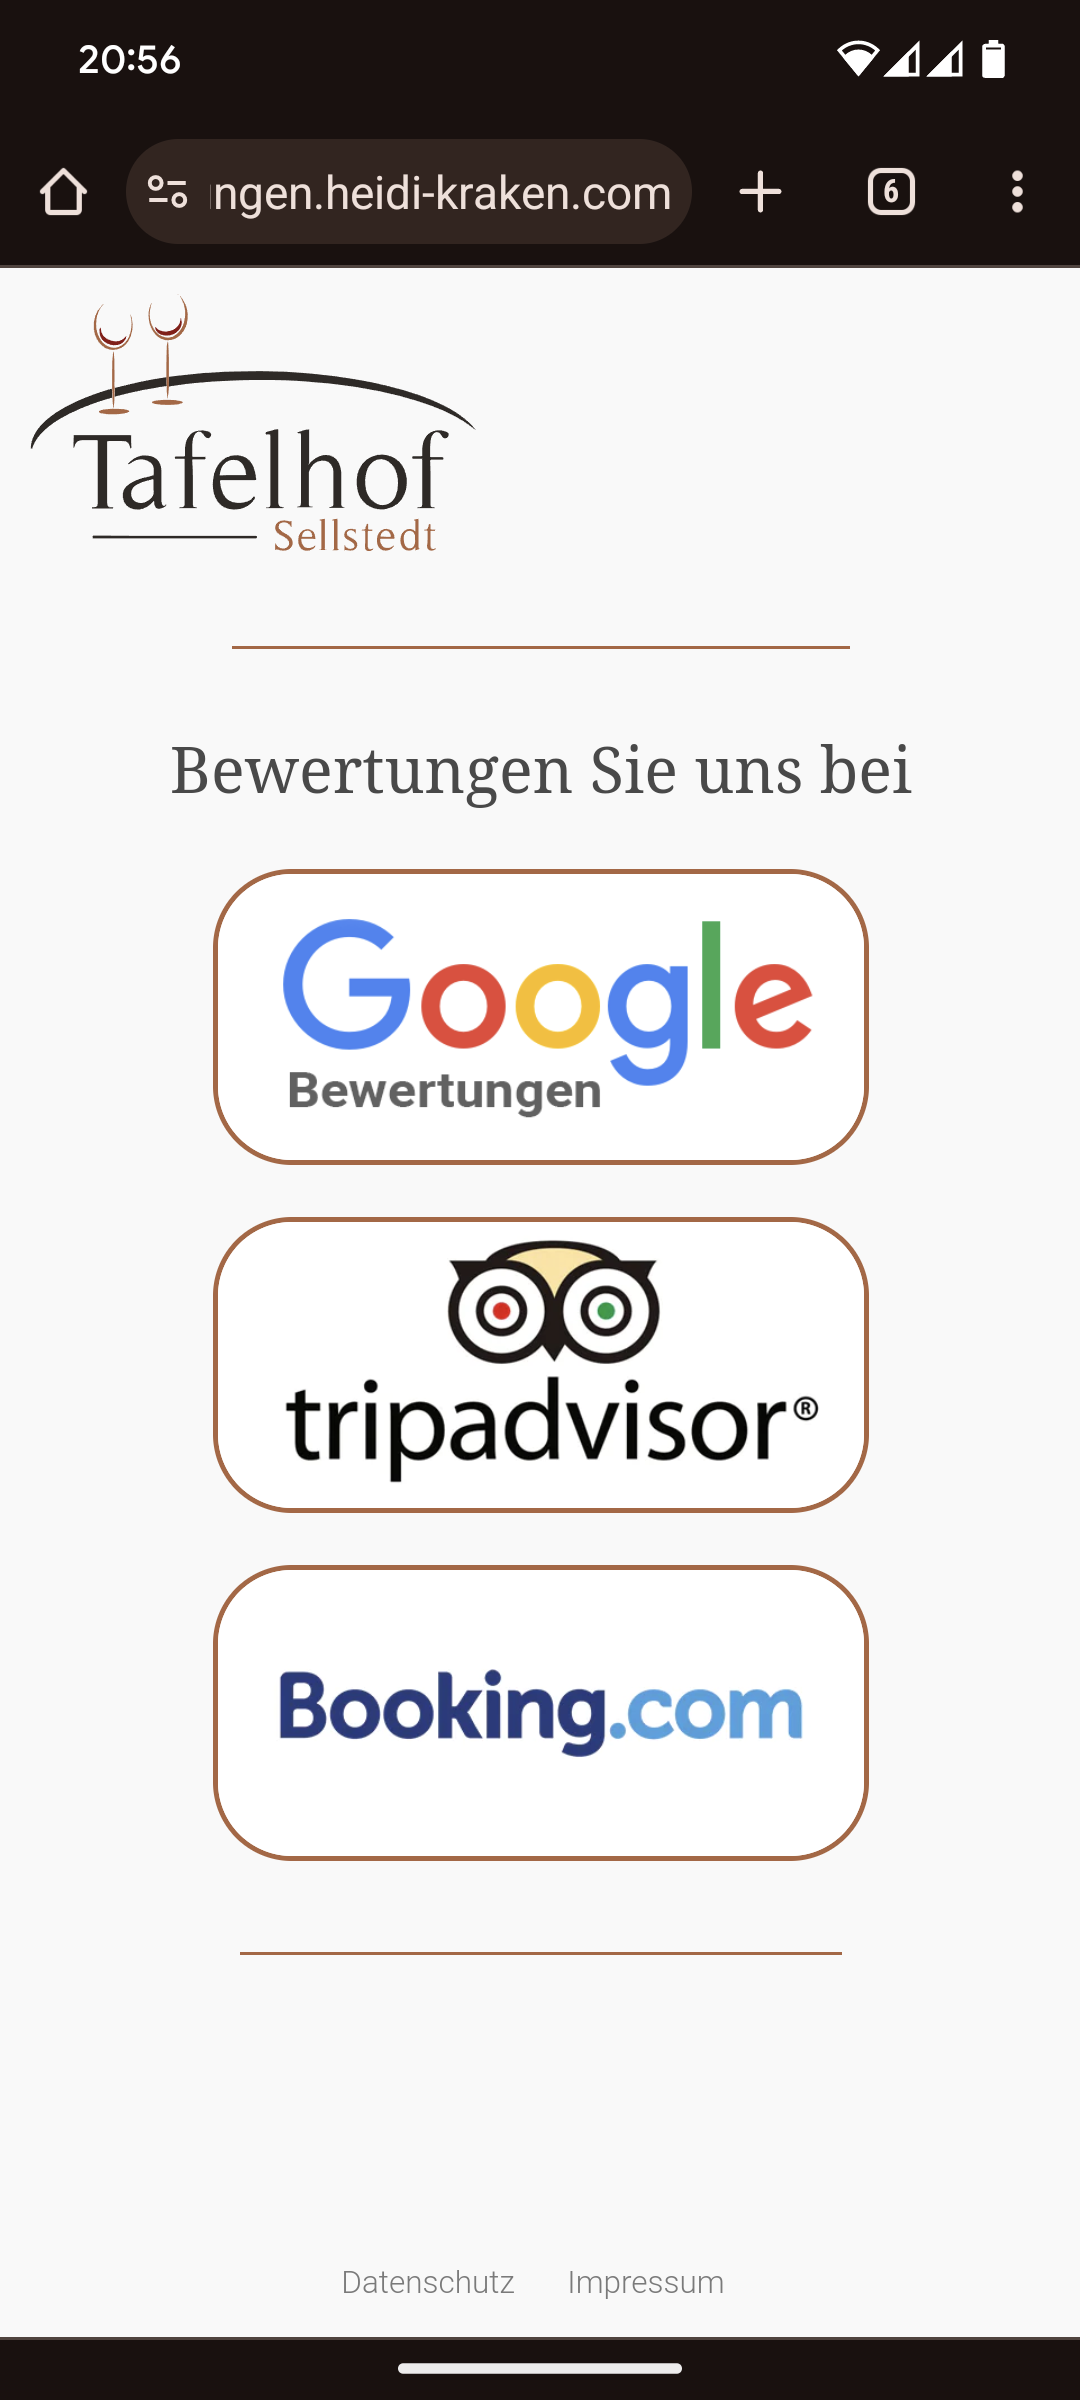 Eine Internetseite mit einer Auswahlmöglichkeit für 3 verschiedene Bewertungsportale (Google, TripAdvisor und Booking.com).